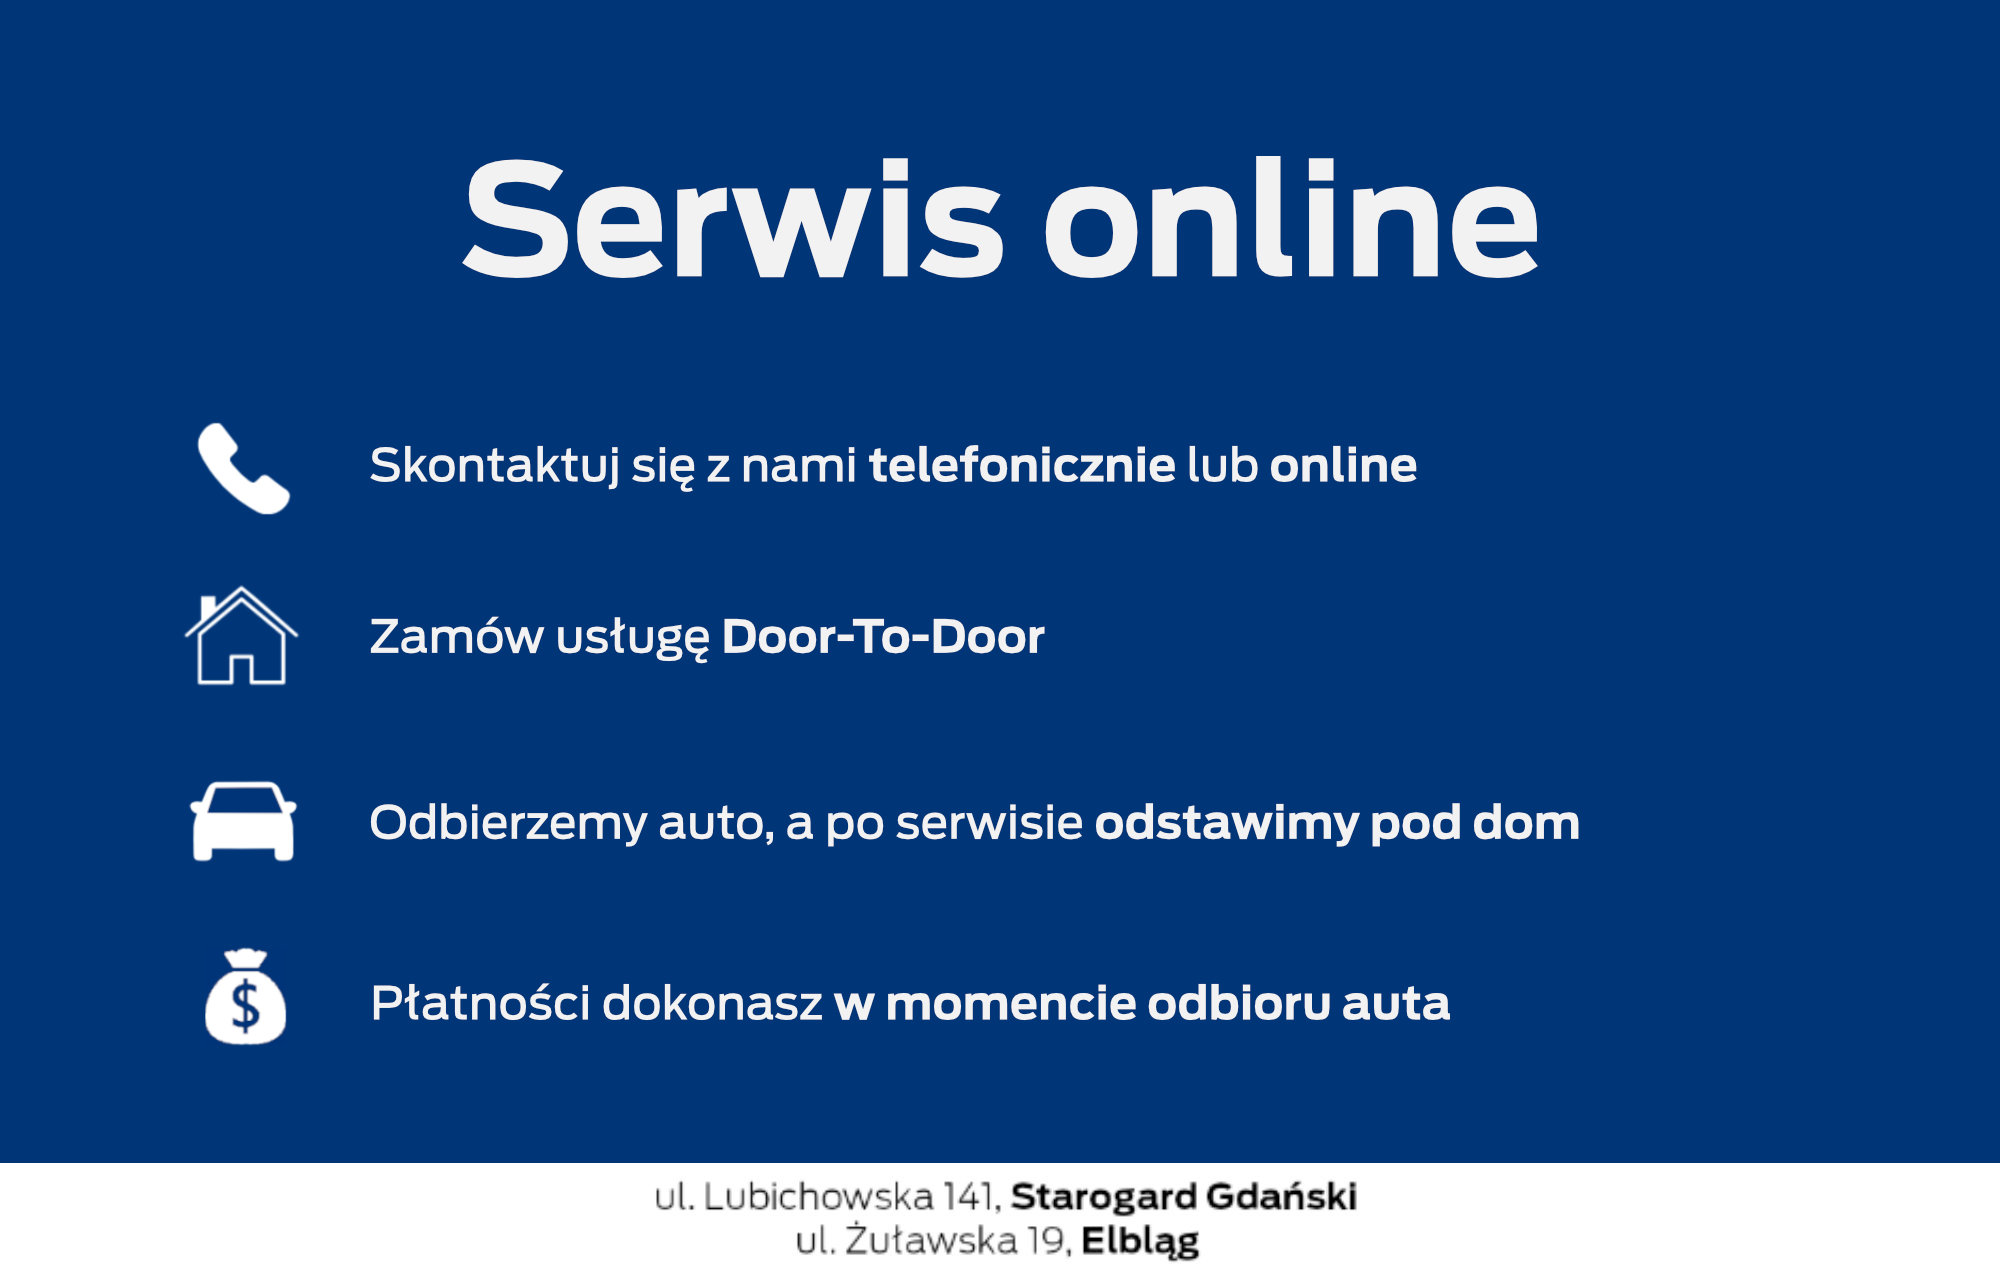 Serwis online